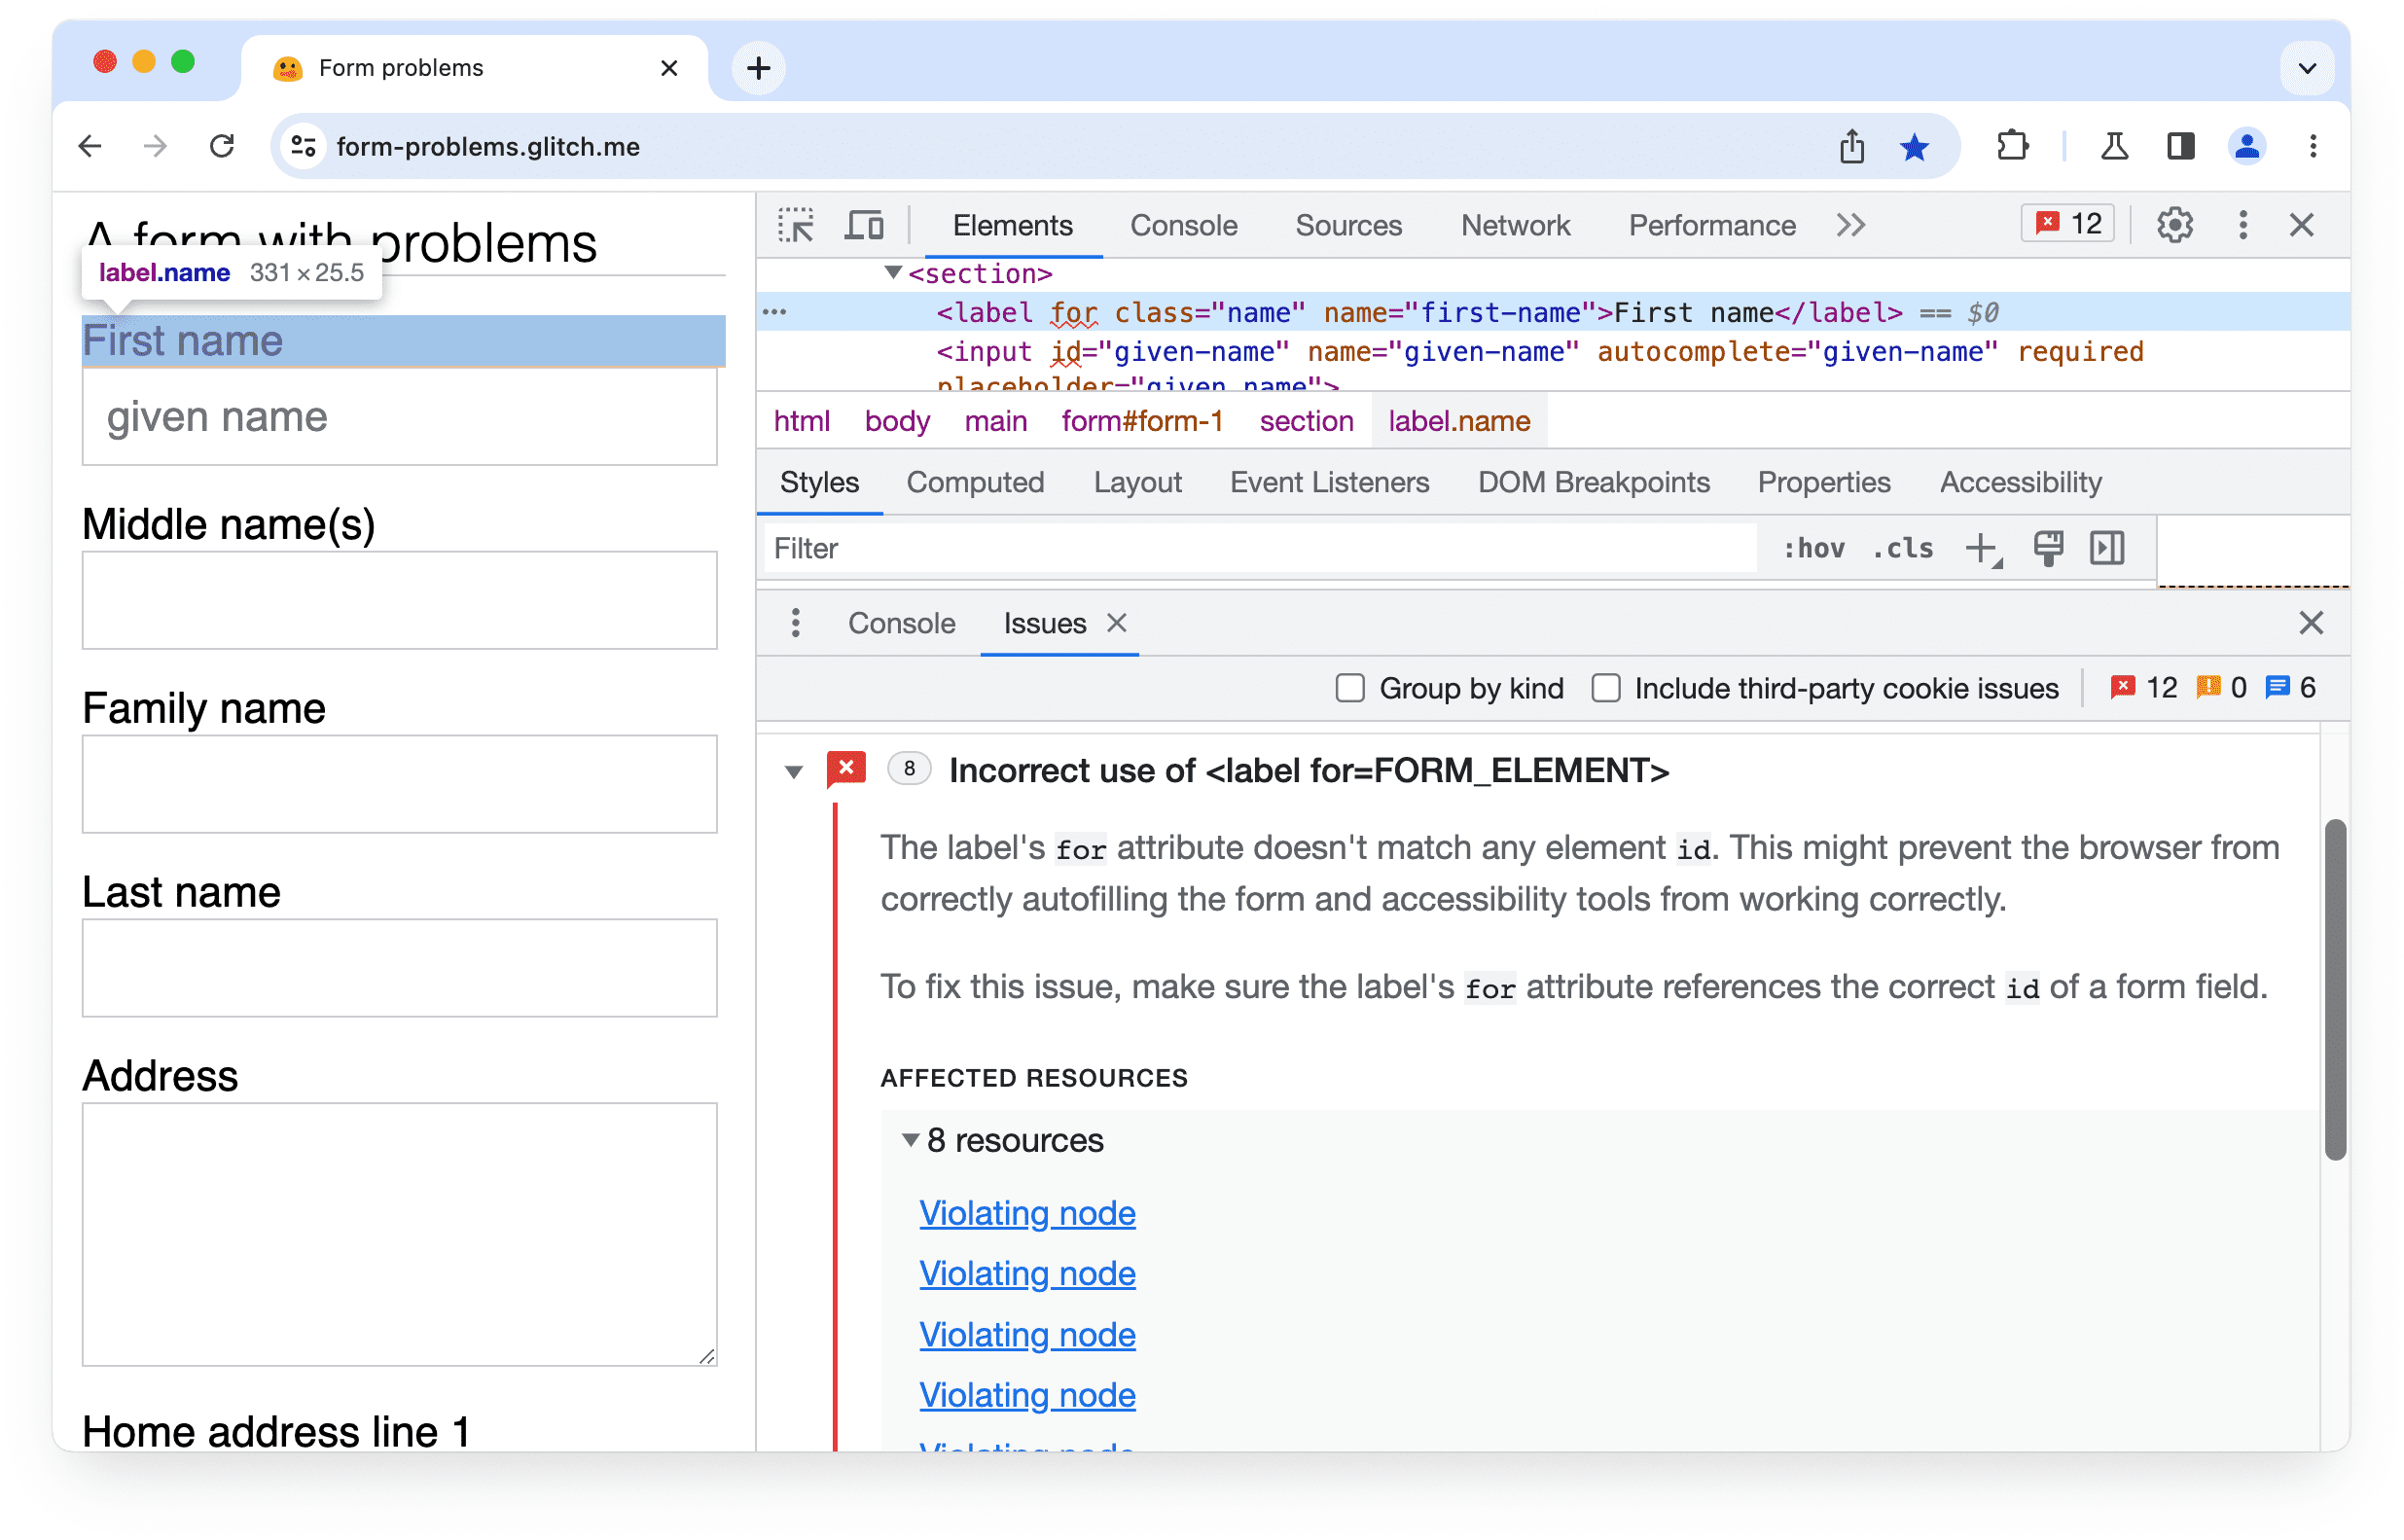 Masalah yang diperluas di
Chrome DevTools: Penggunaan label yang salah untuk atribut.